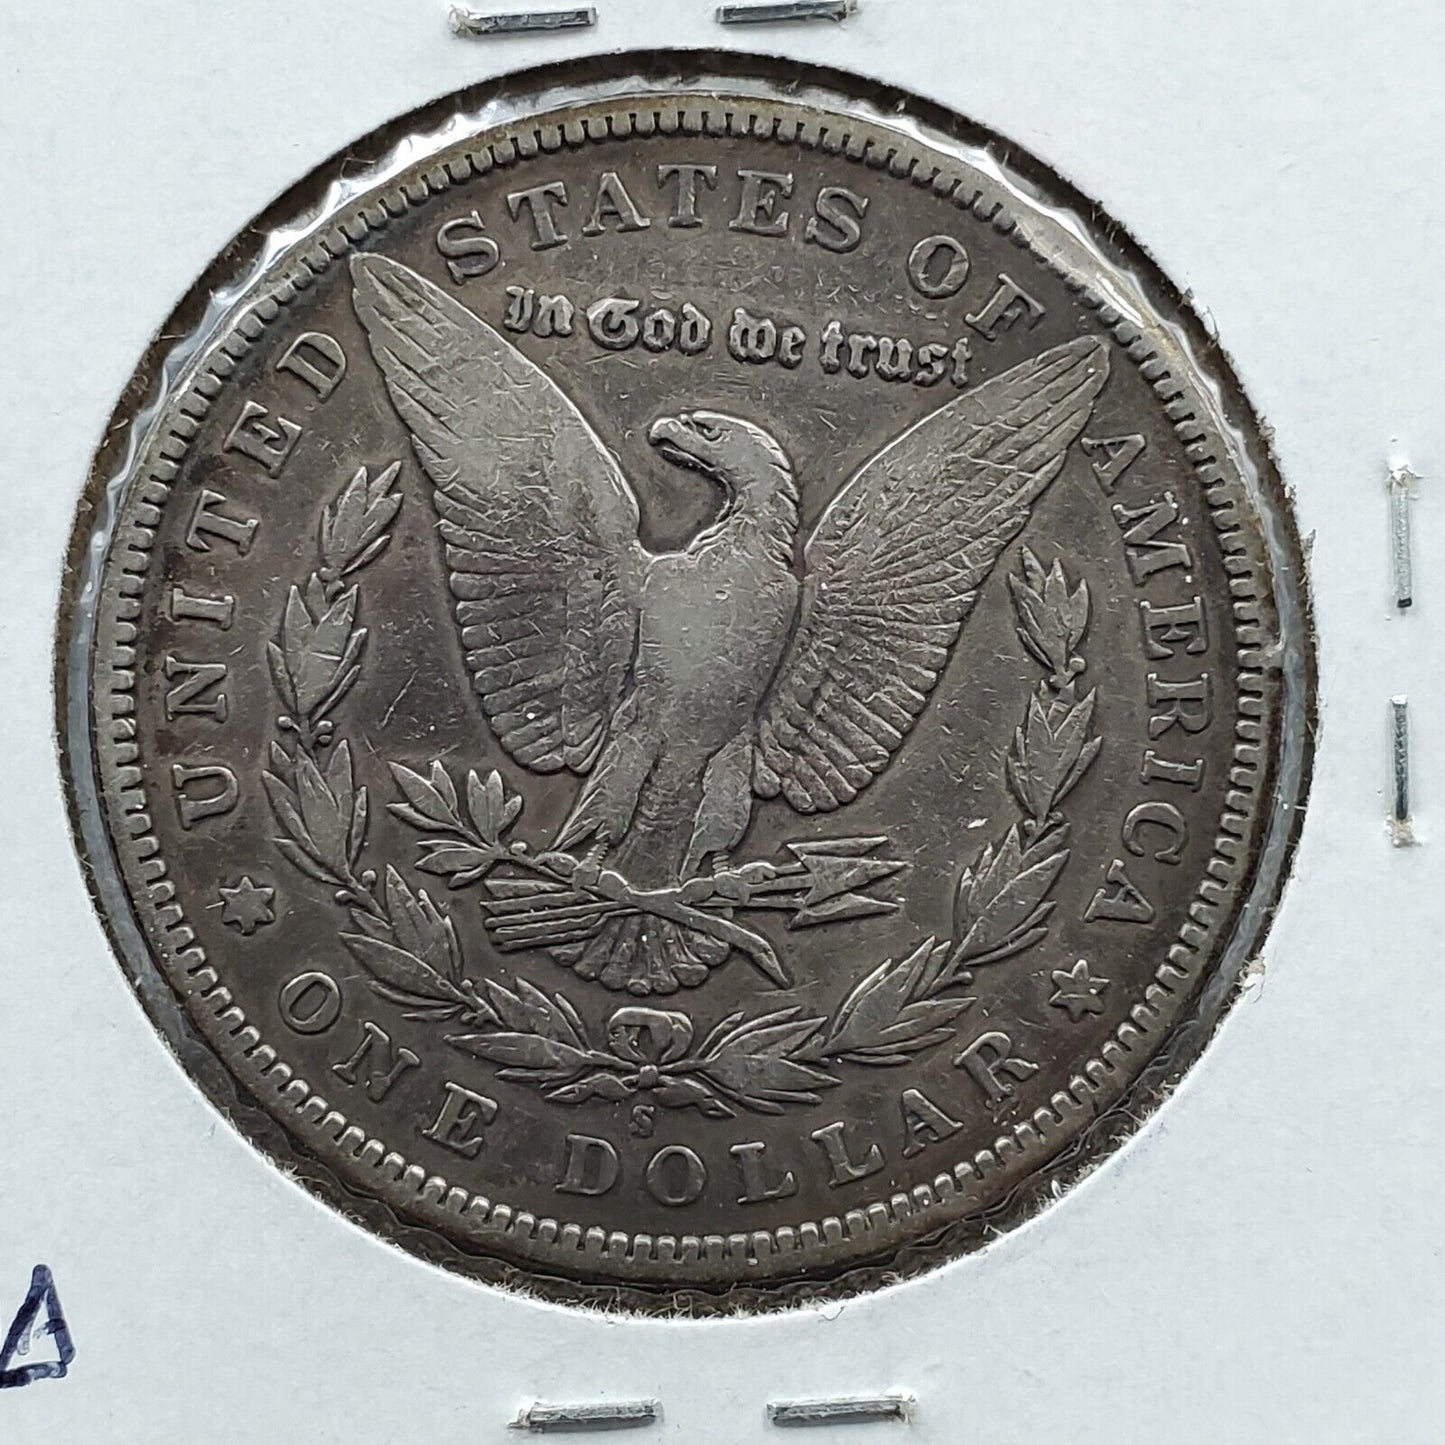 1896 S Morgan Silver Dollar Coin Choice VF VERY FINE Nice Circulated Condition